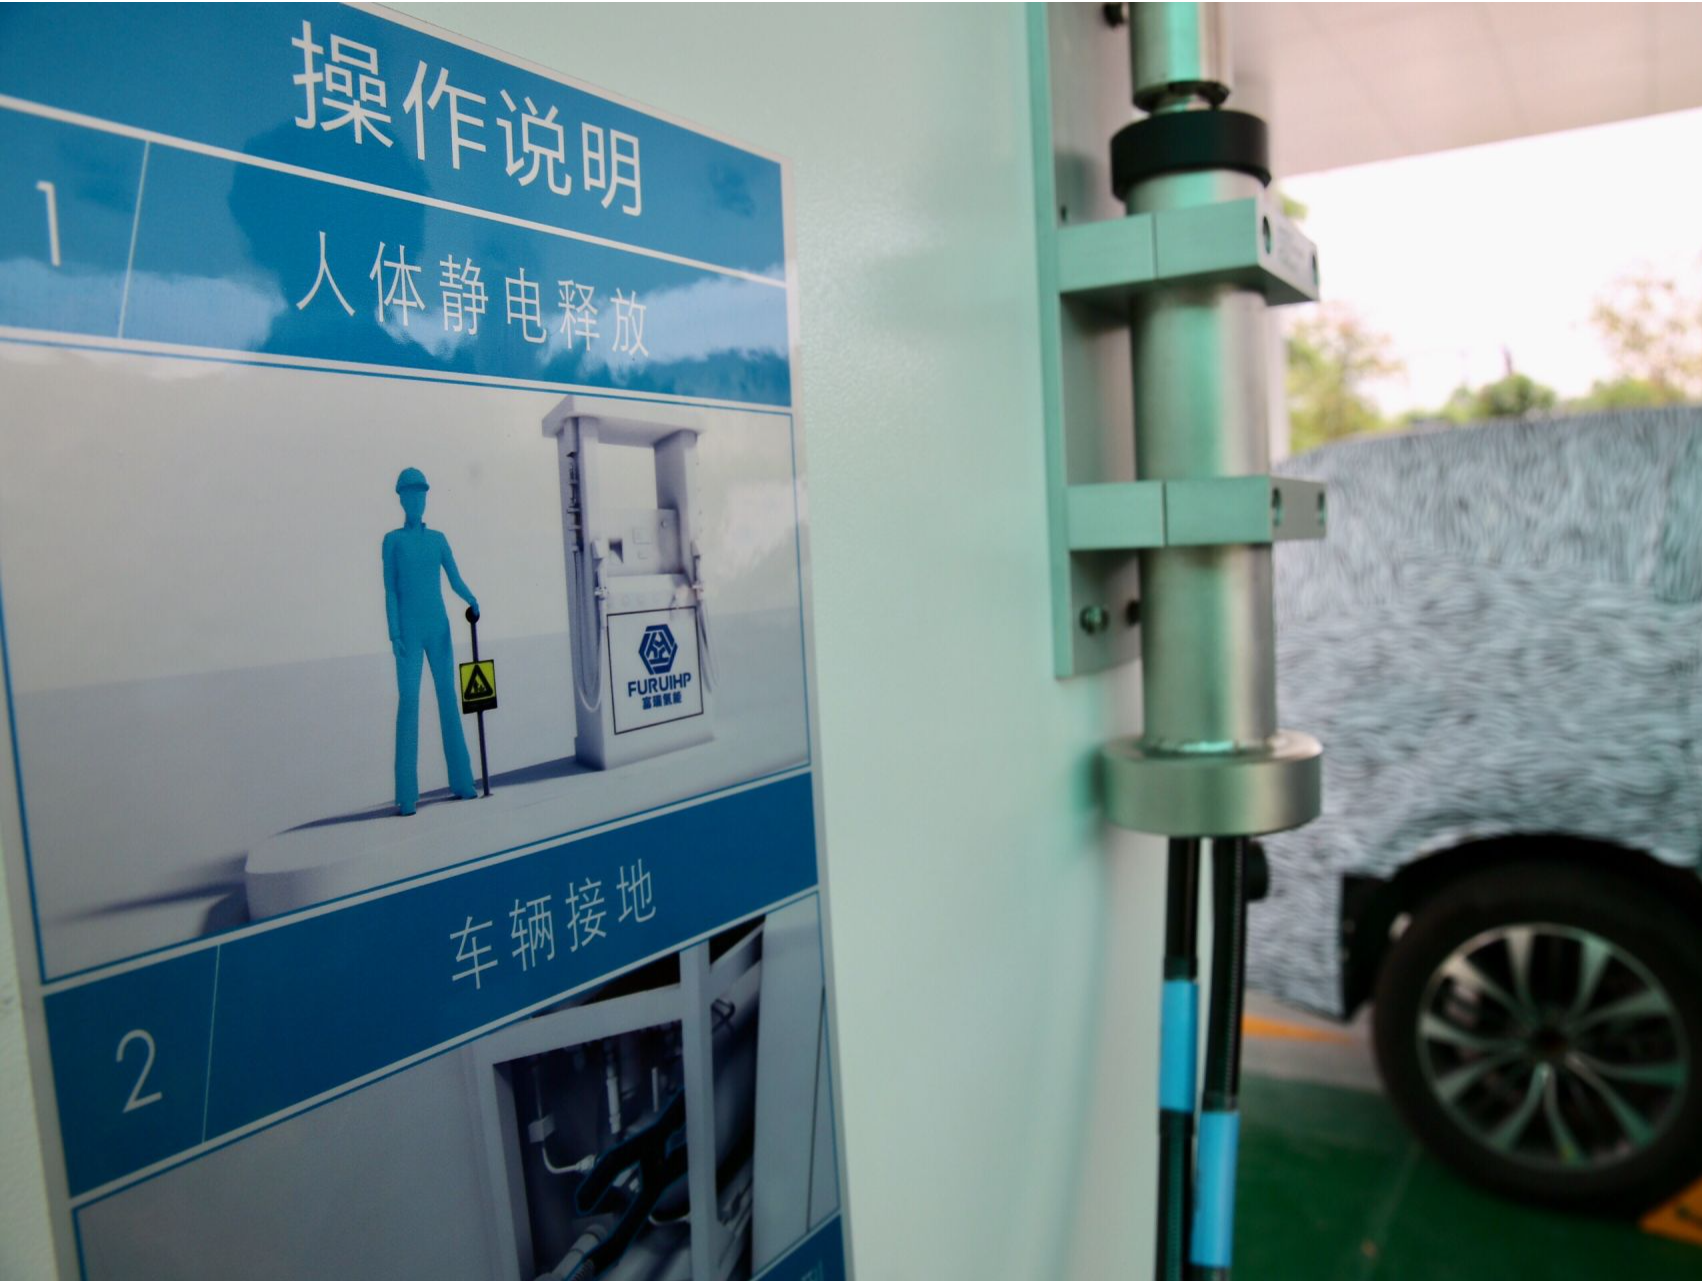 事关加氢站！广州的利好政策来了！